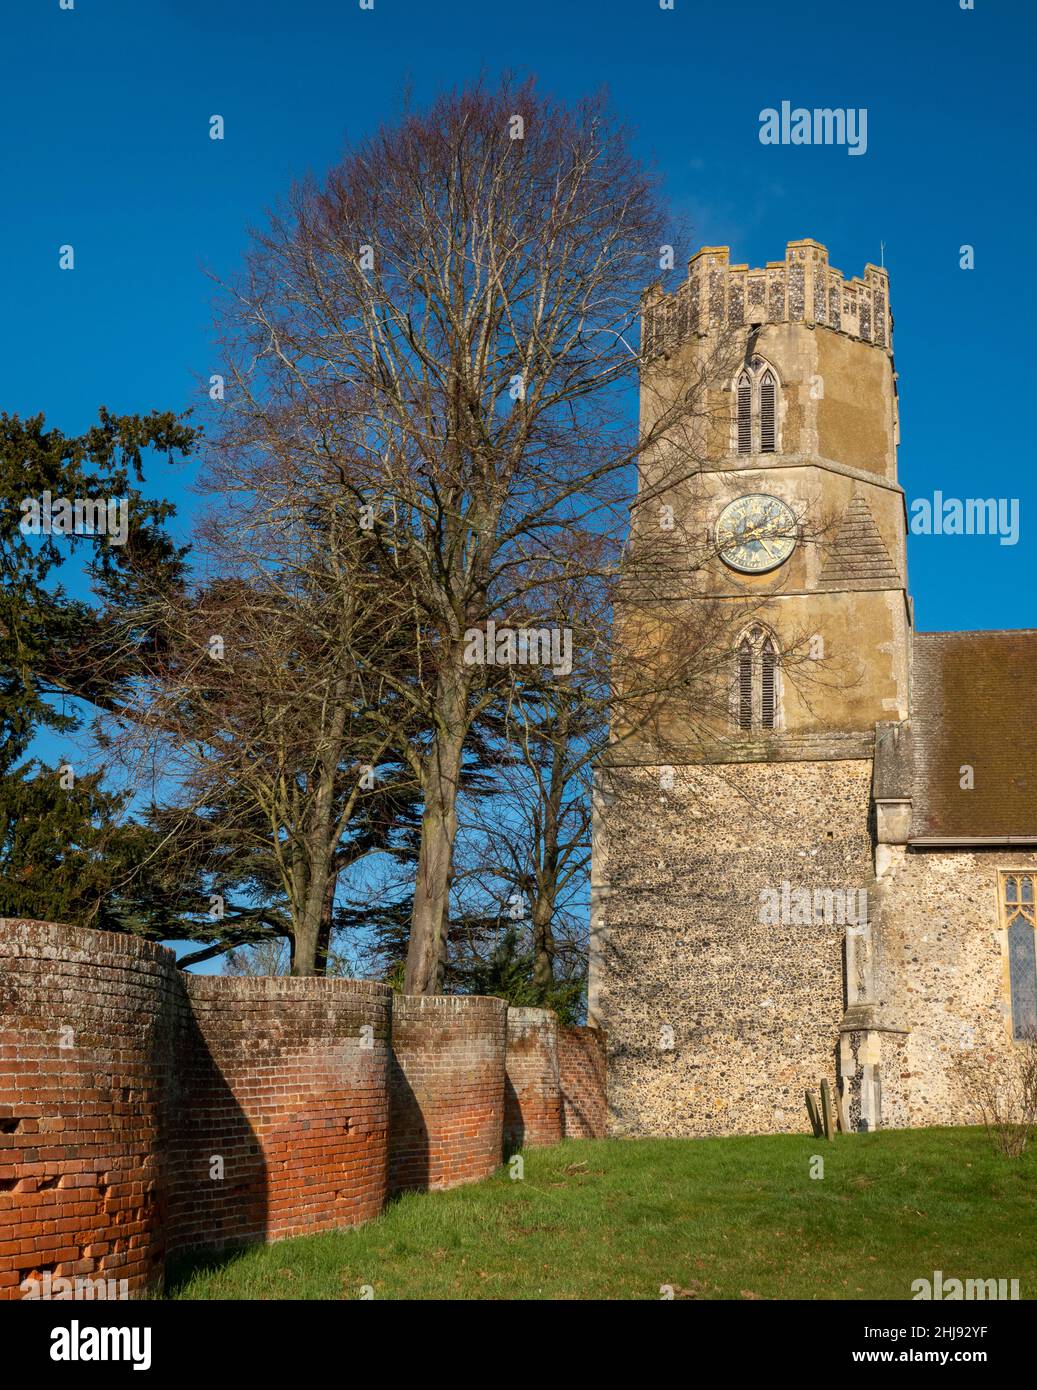 Achteckiger Turm und Ziffernblatt sowie ein Teil der krinkligen Kurbelwand, All Saints Church Easton, Suffolk, Großbritannien Stockfoto